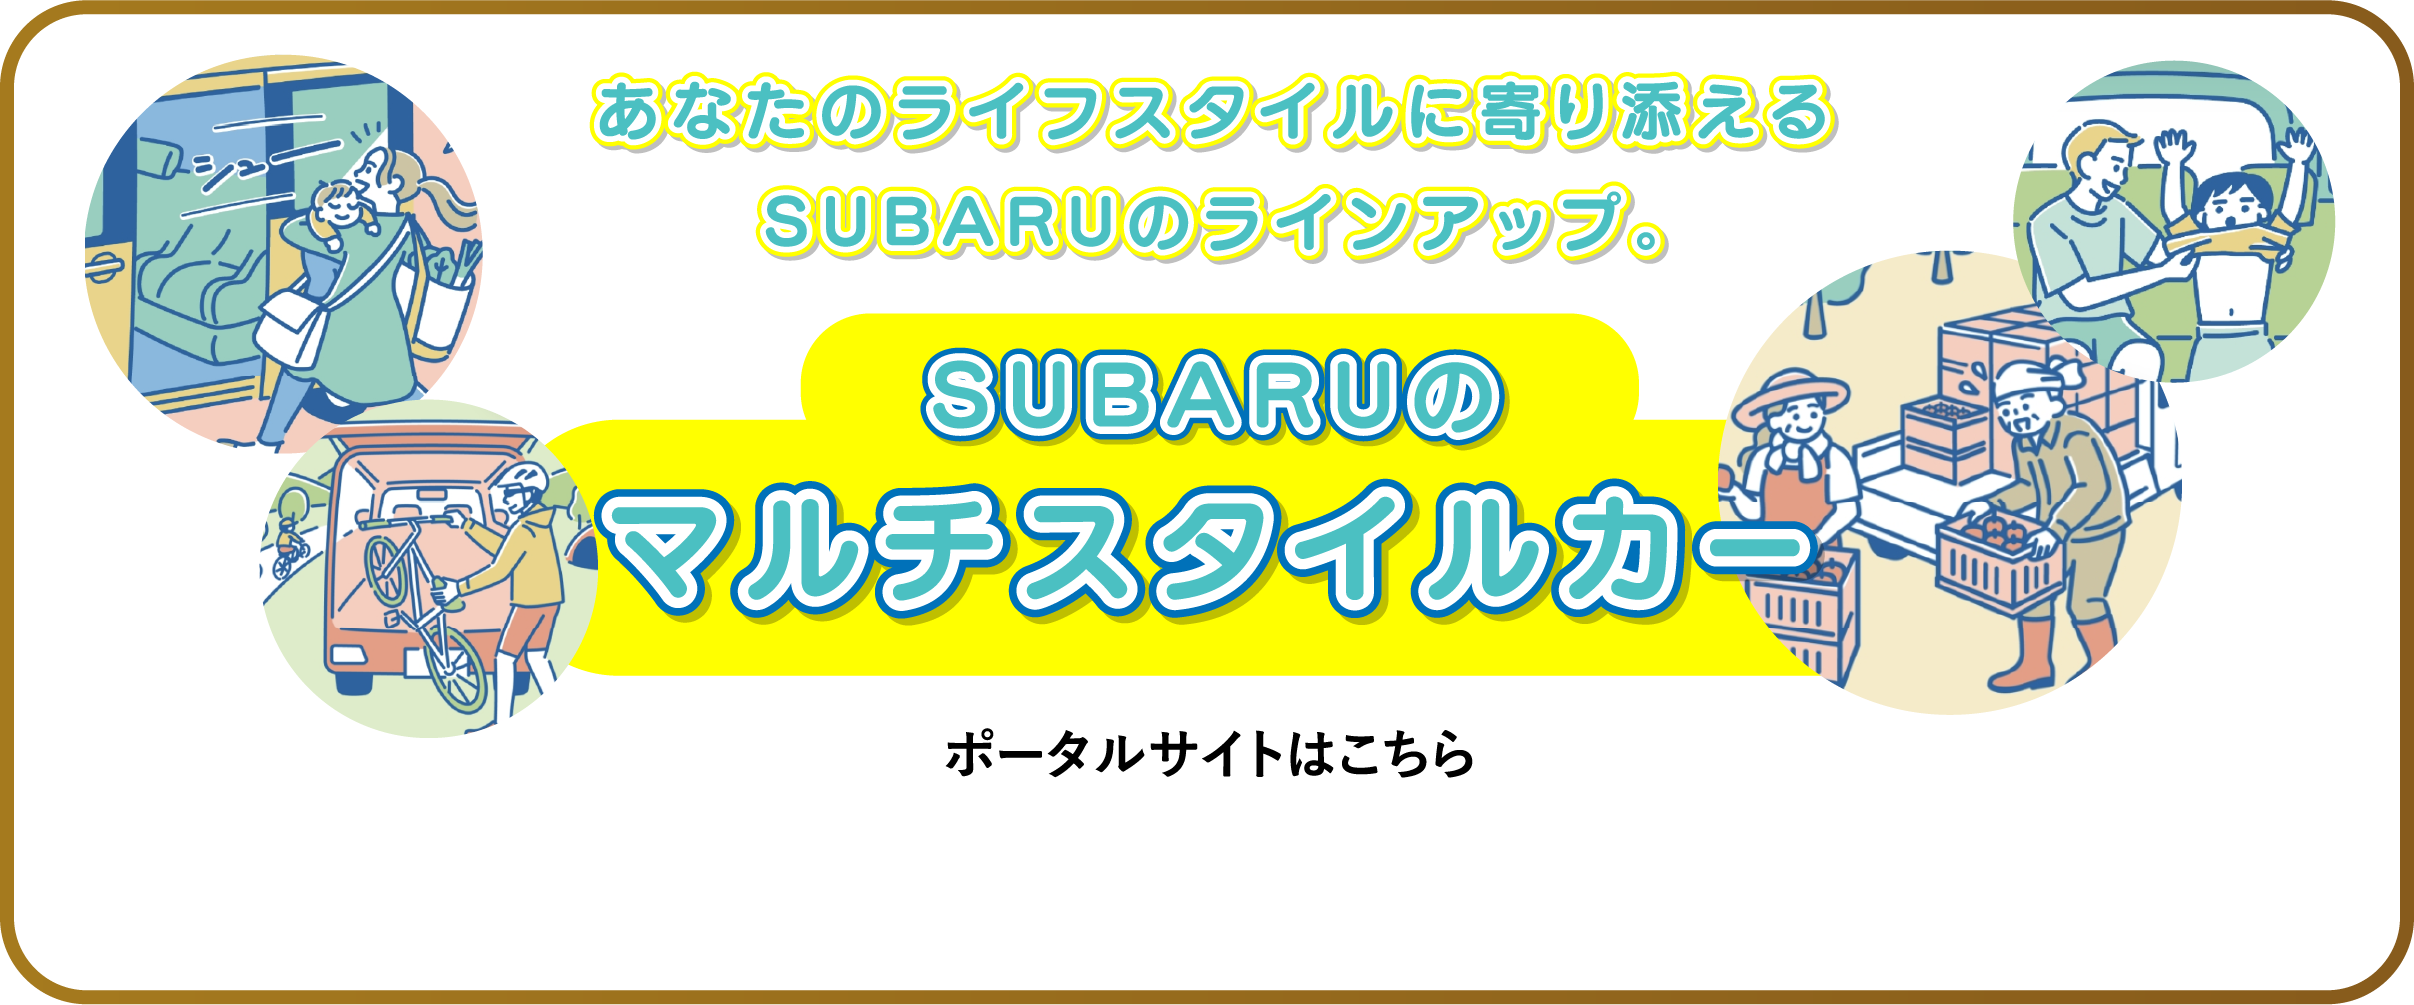 あなたのライフスタイルに寄り添えるSUBARUのラインアップ。SUBARUのマルチスタイルカー ポータルサイトはこちら